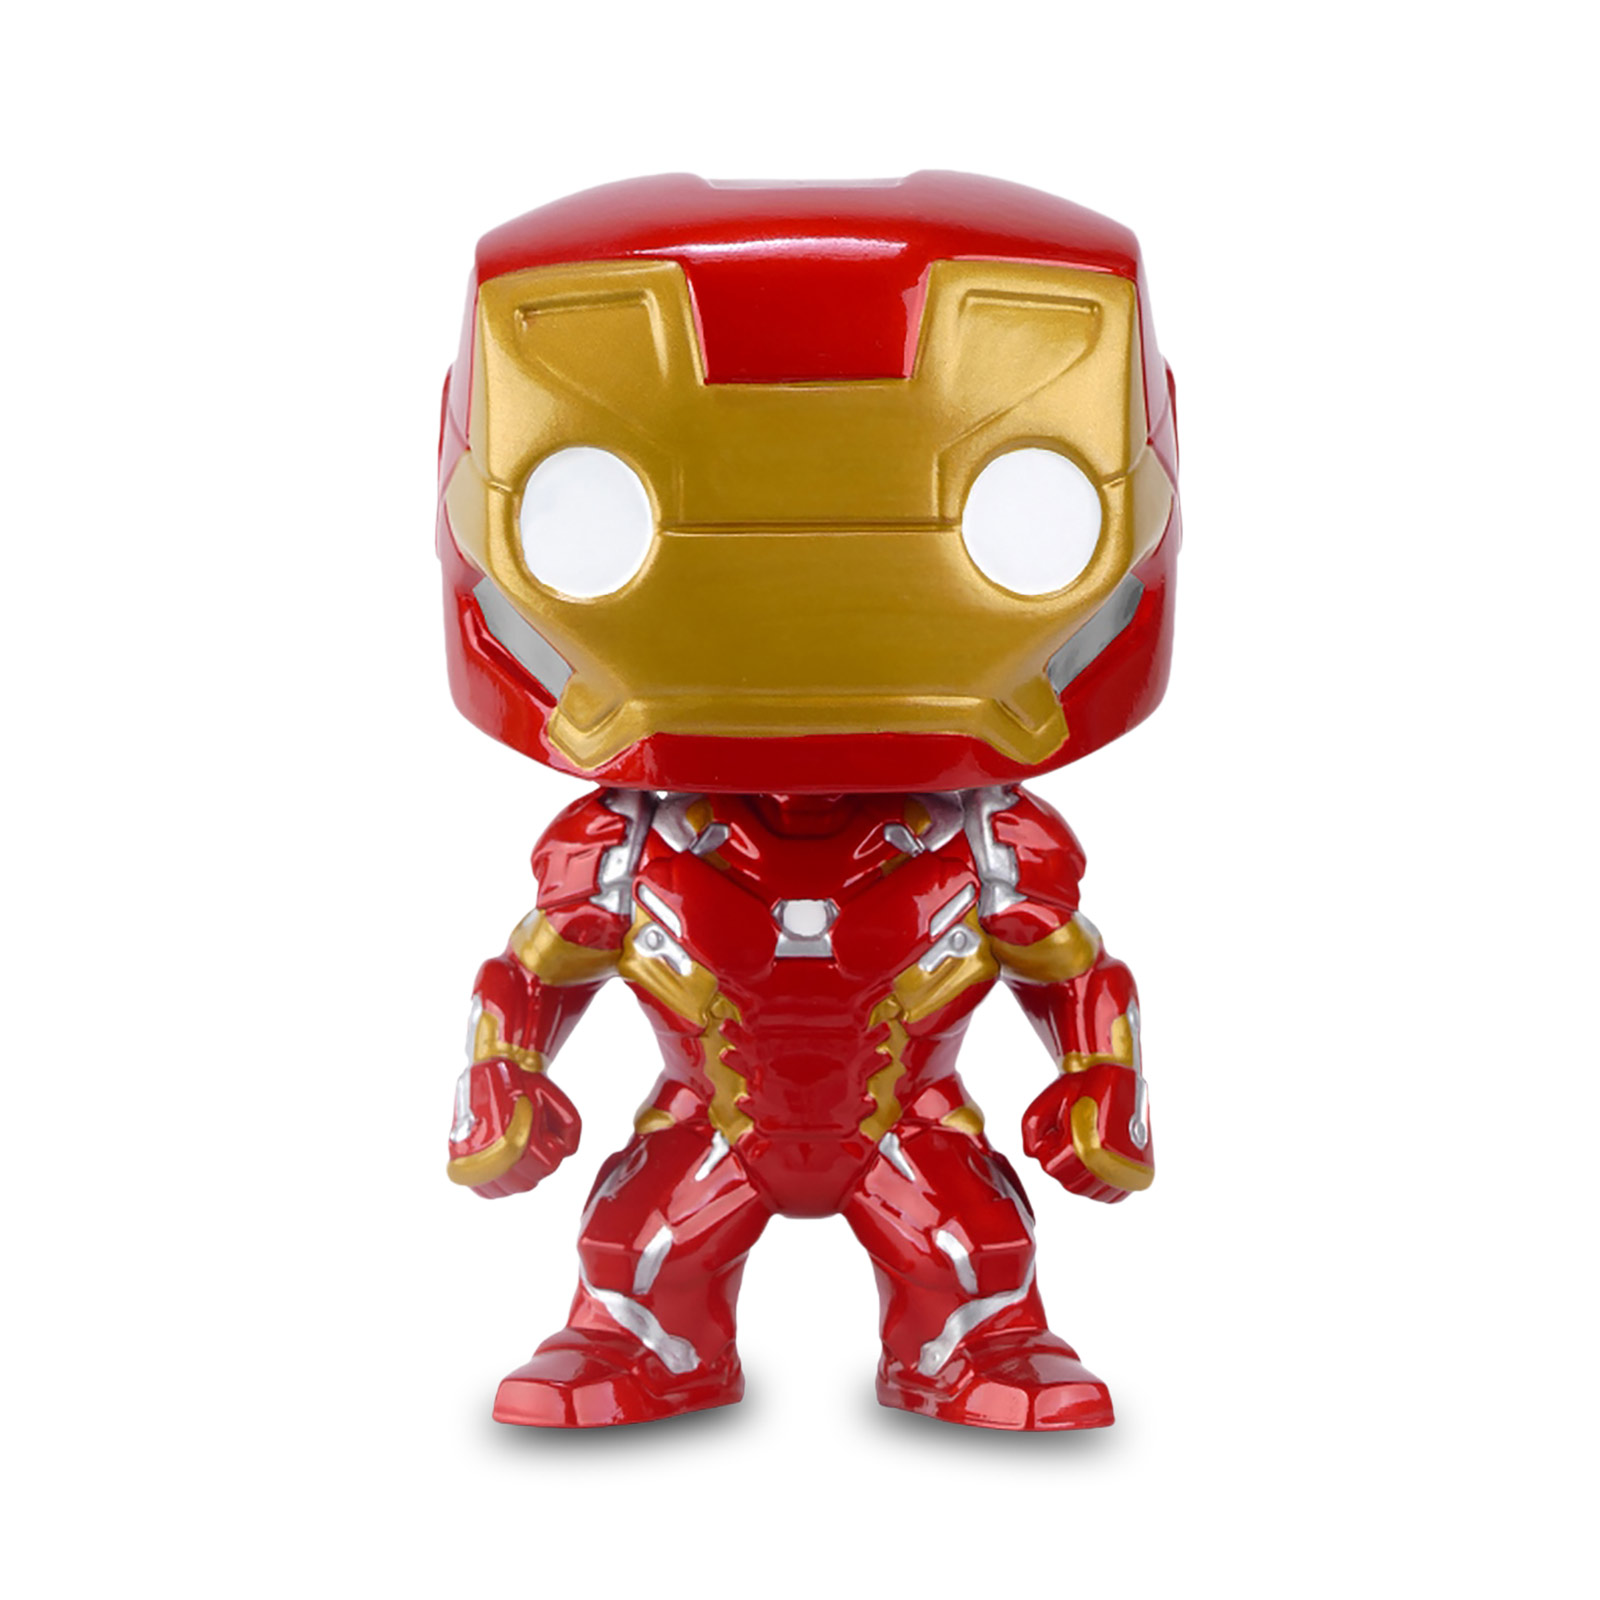 Civil War - Iron Man Funko Pop Bobblehead Figure